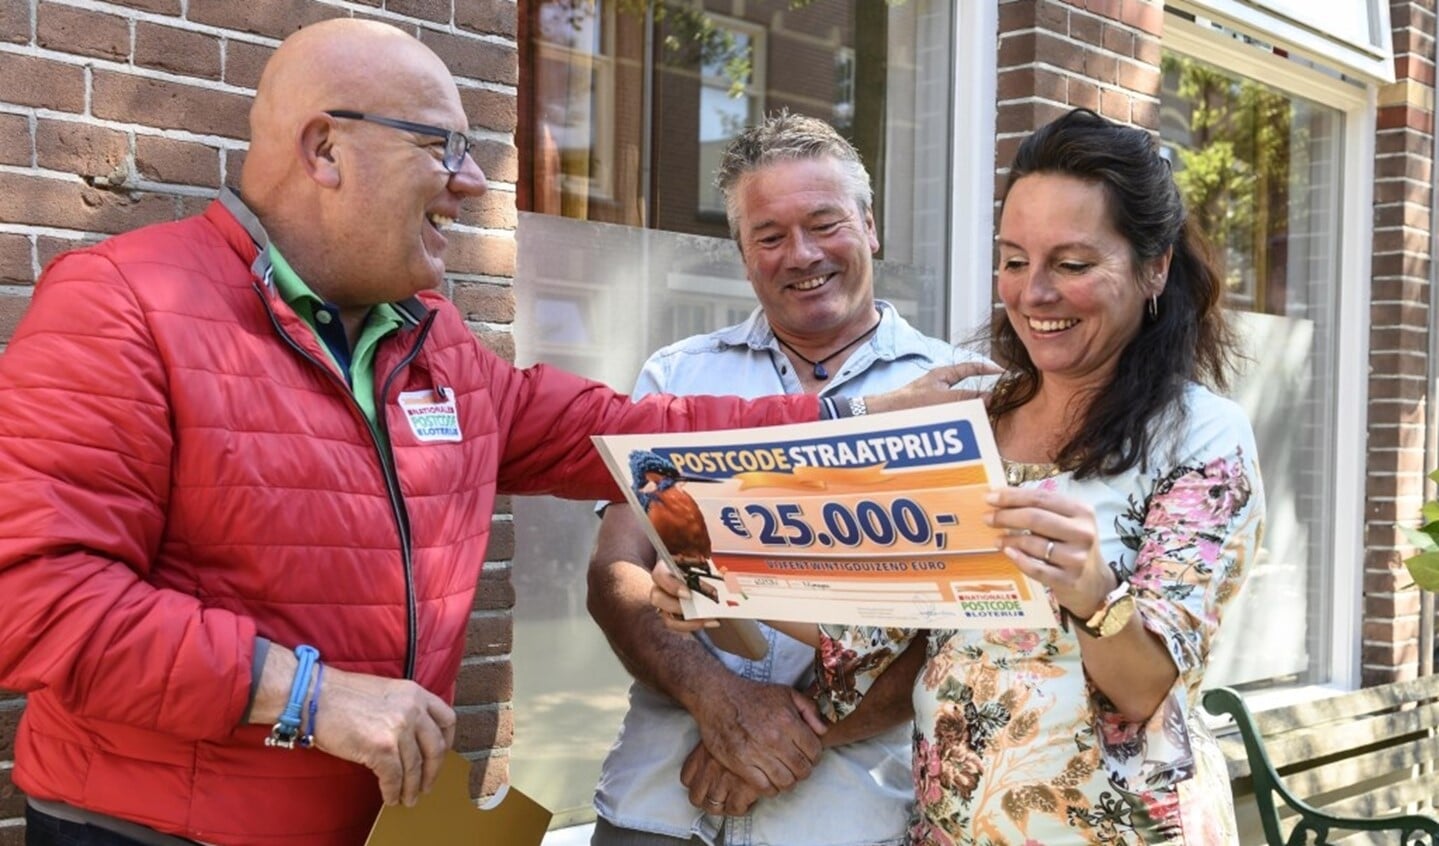  Madelon en haar man Theo nemen de PostcodeStraatprijs-cheque ter waarde van 25.000 euro in ontvangst van Gaston.